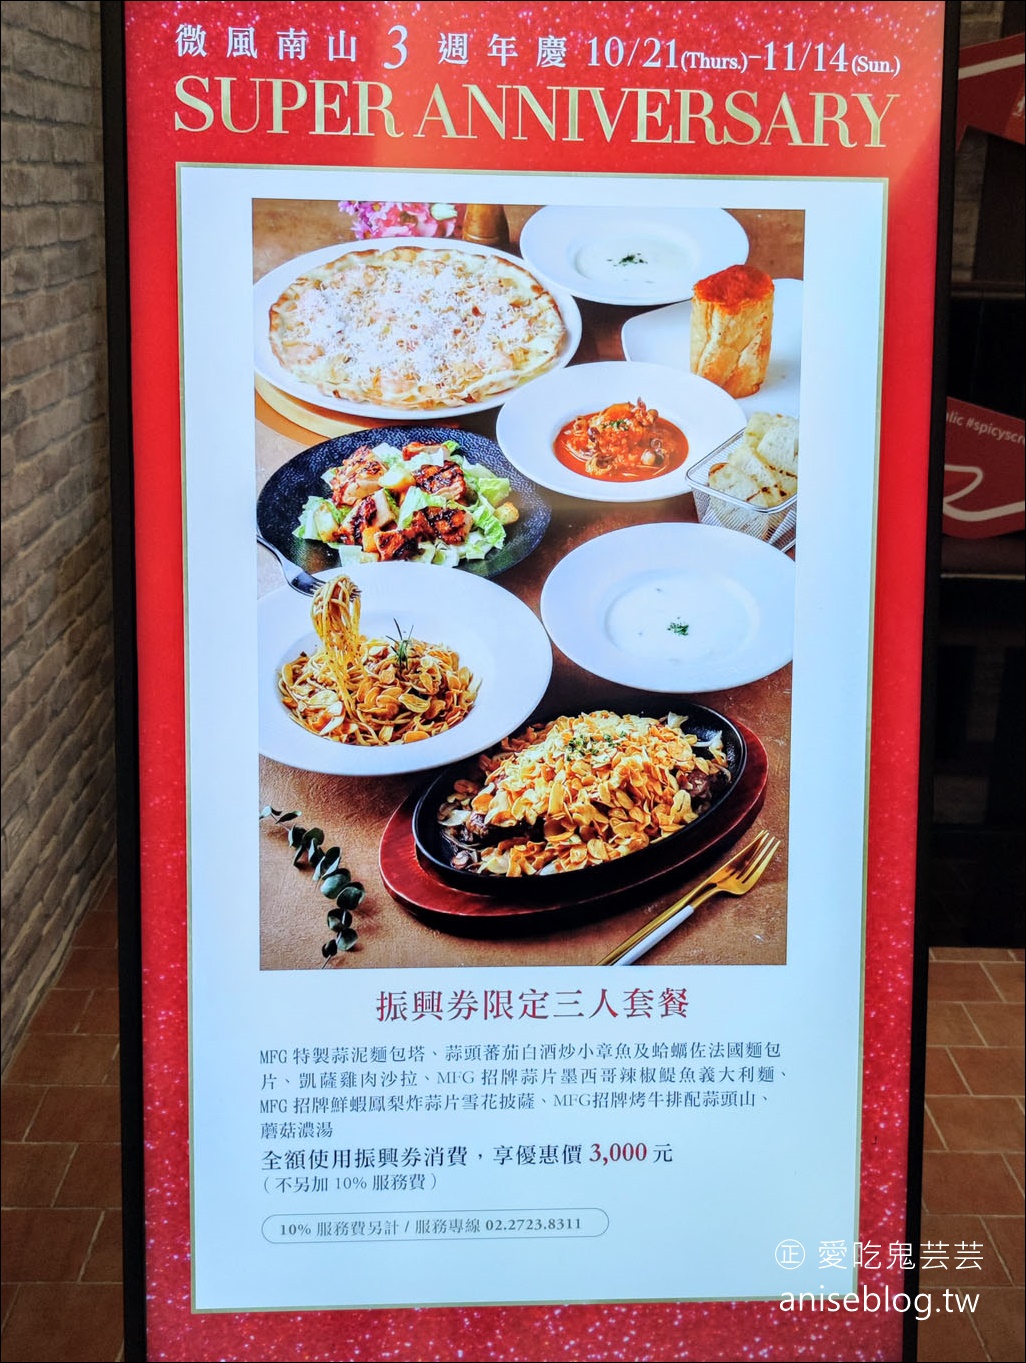 (已歇業)Mad for Garlic Taiwan大蒜餐廳，韓國大蒜料理連鎖店@微風南山，還有101景觀哦！(文末菜單)